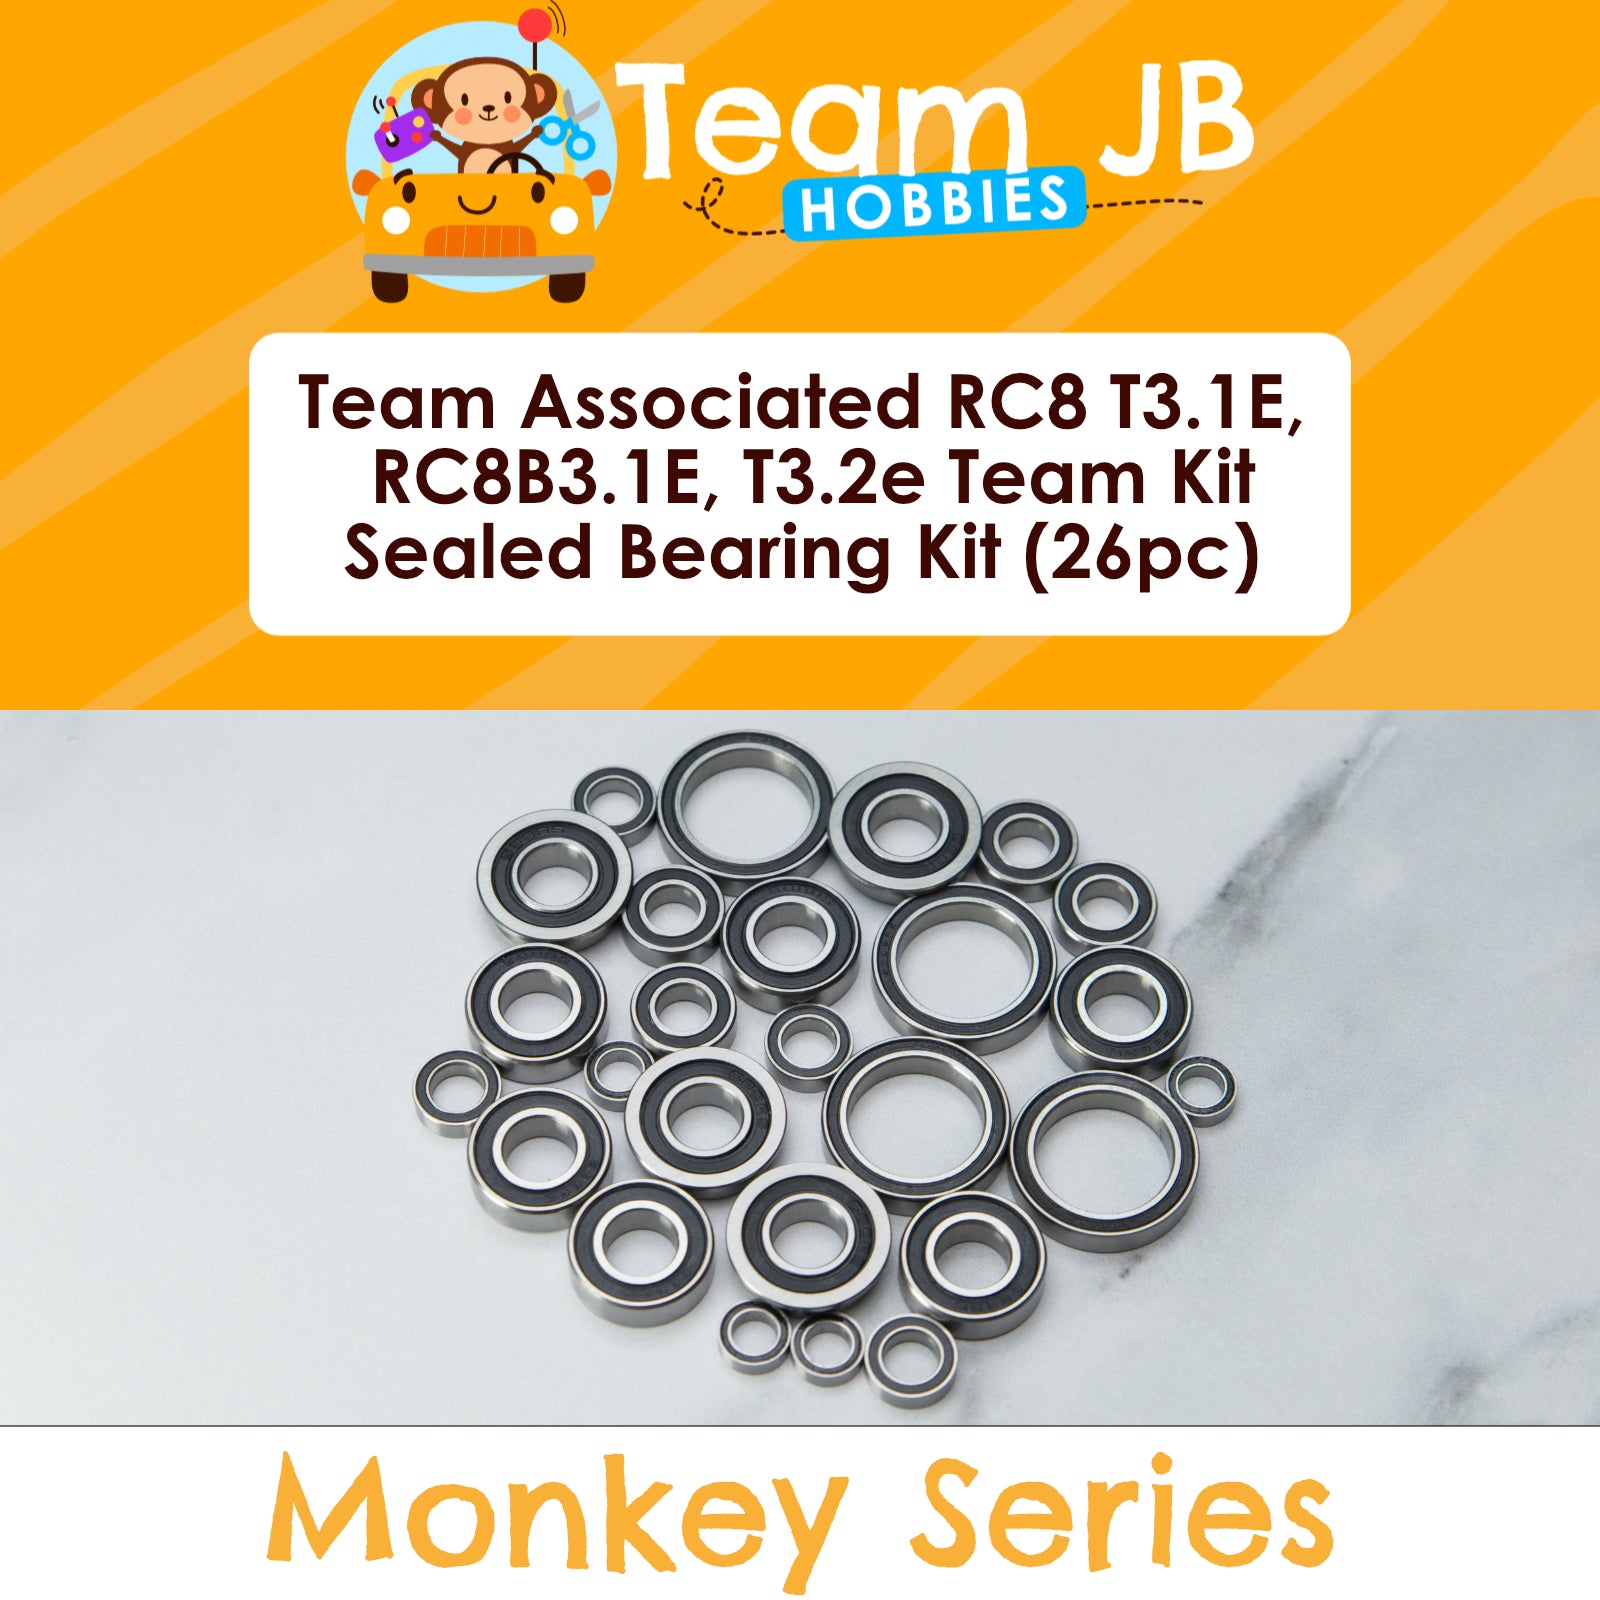 Team Associated RC8 T3.1E, RC8B3.1E, T3.2e Team Kit - Sealed Bearing Kit